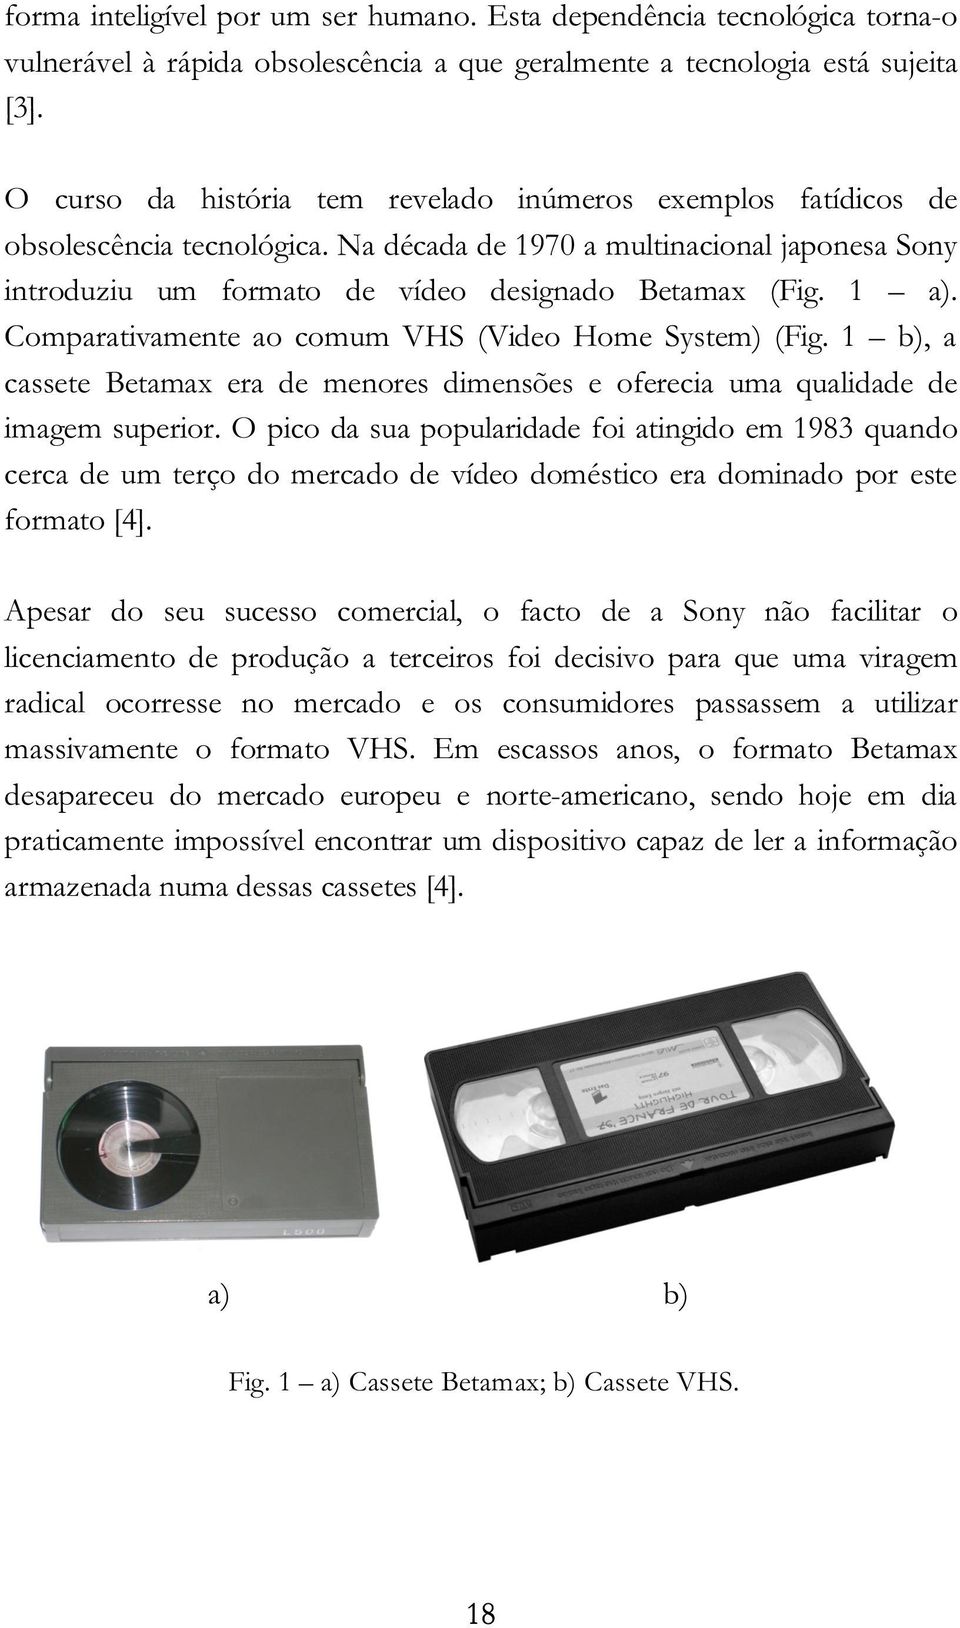 Comparativamente ao comum VHS (Video Home System) (Fig. 1 b), a cassete Betamax era de menores dimensões e oferecia uma qualidade de imagem superior.